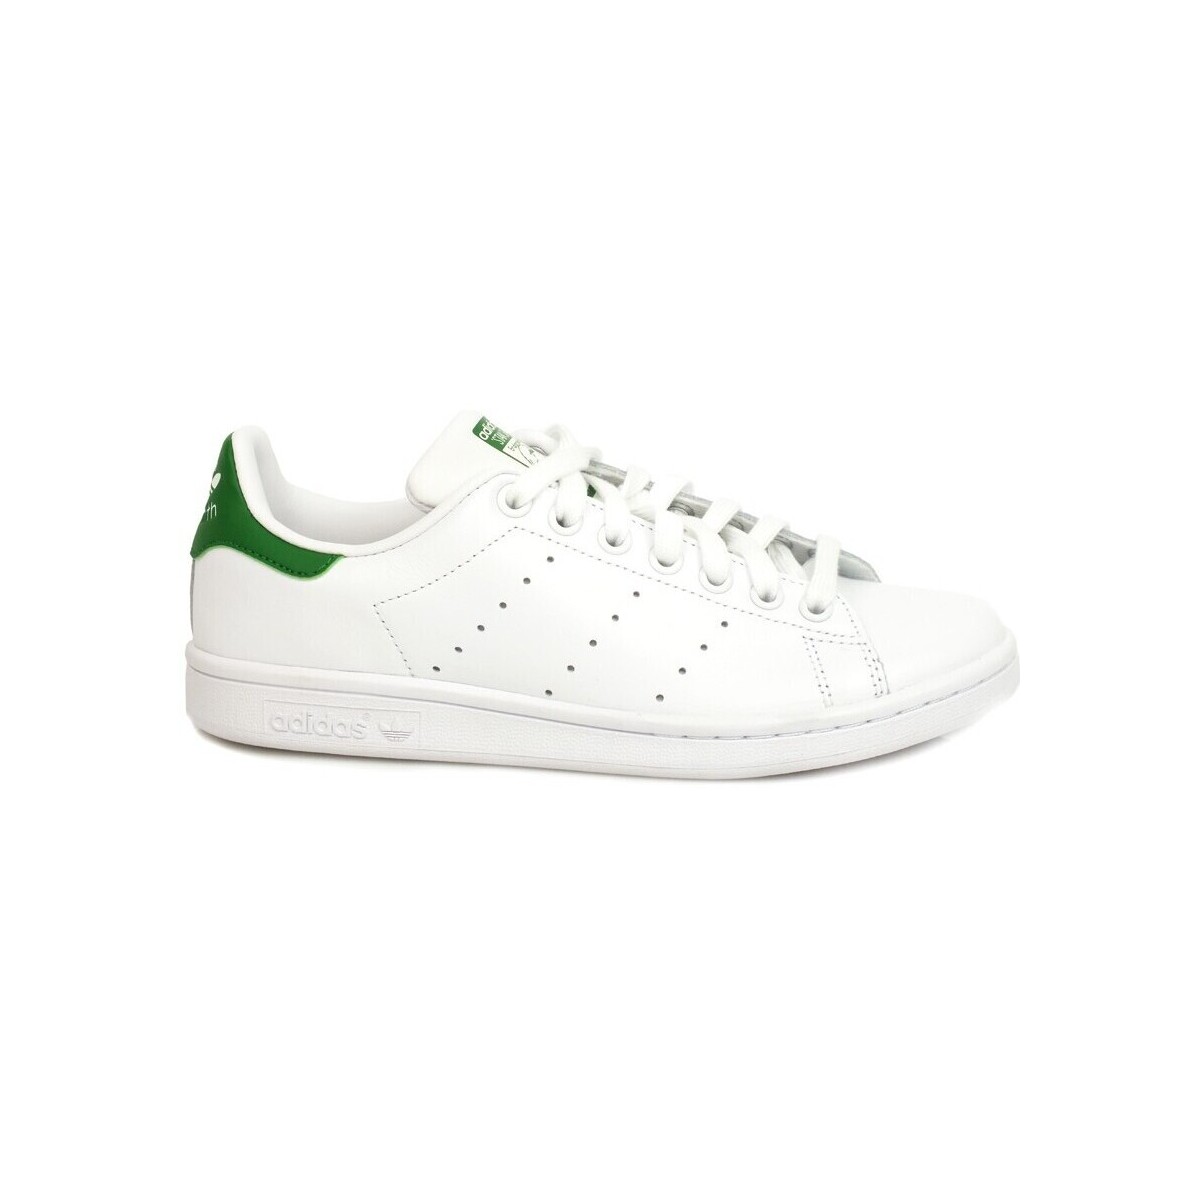 Chaussures Homme Multisport adidas Originals Stan Smith White Green M20324 Blanc